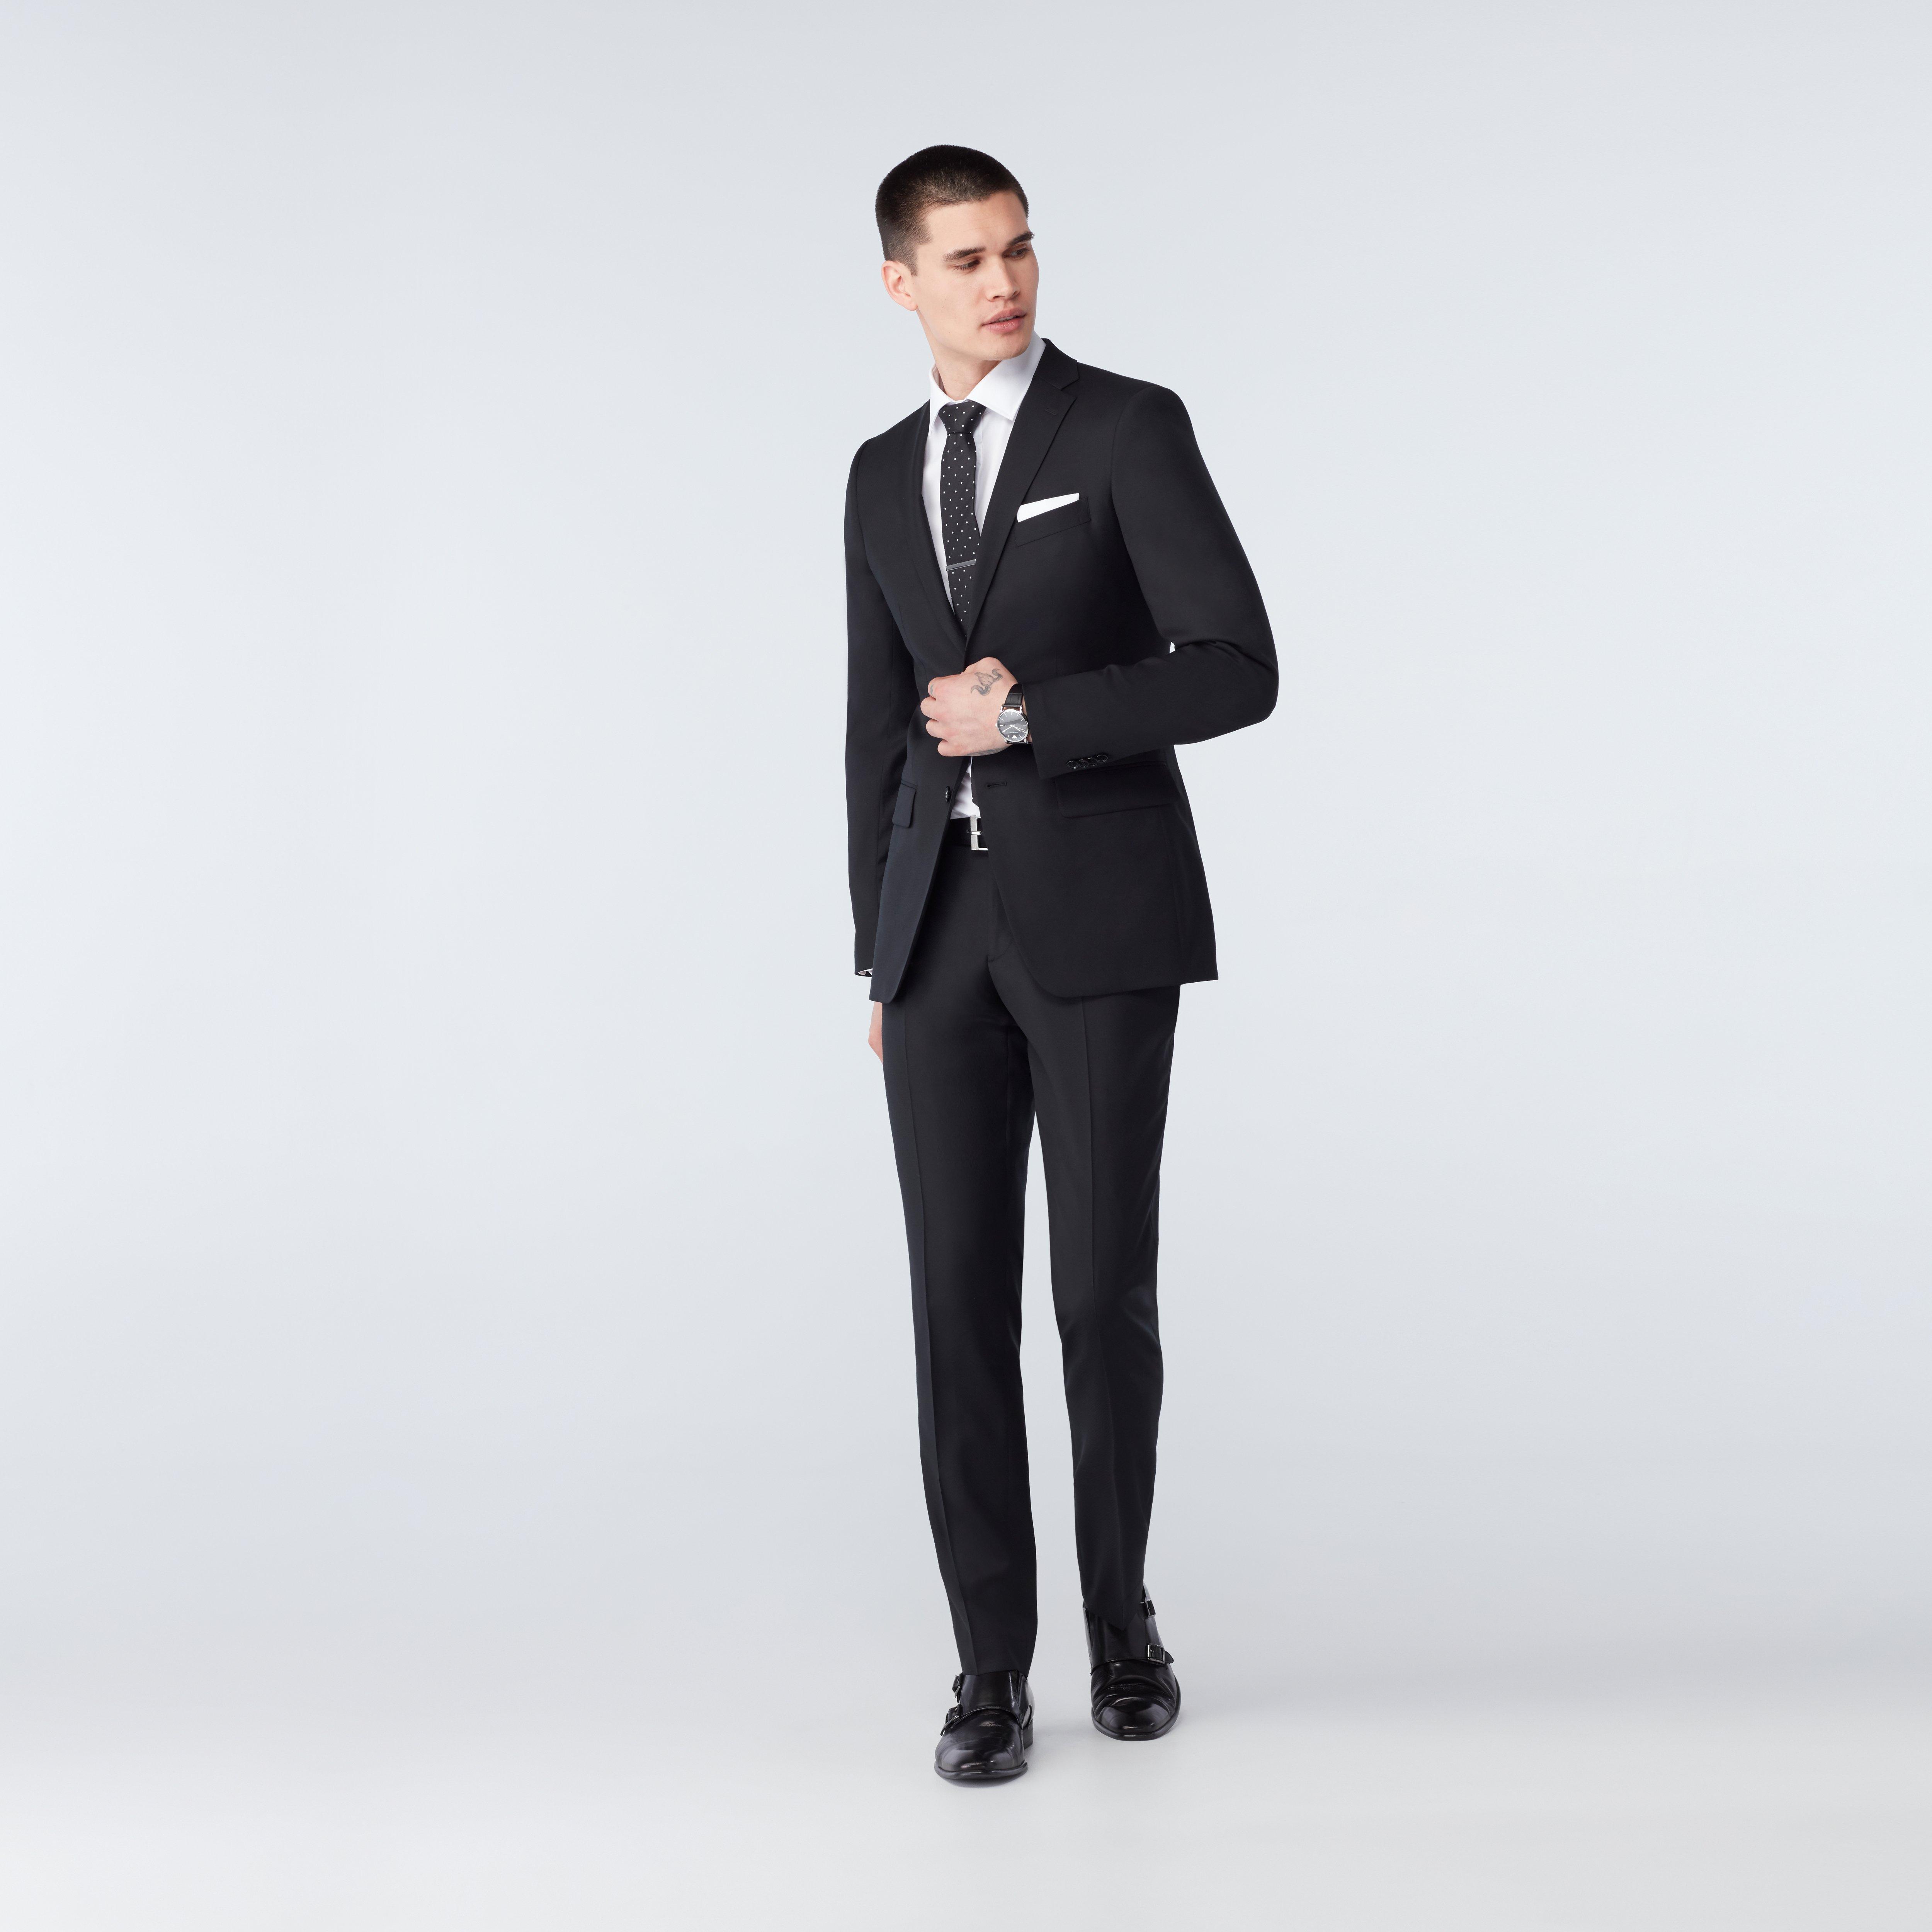 Highworth Black Suit